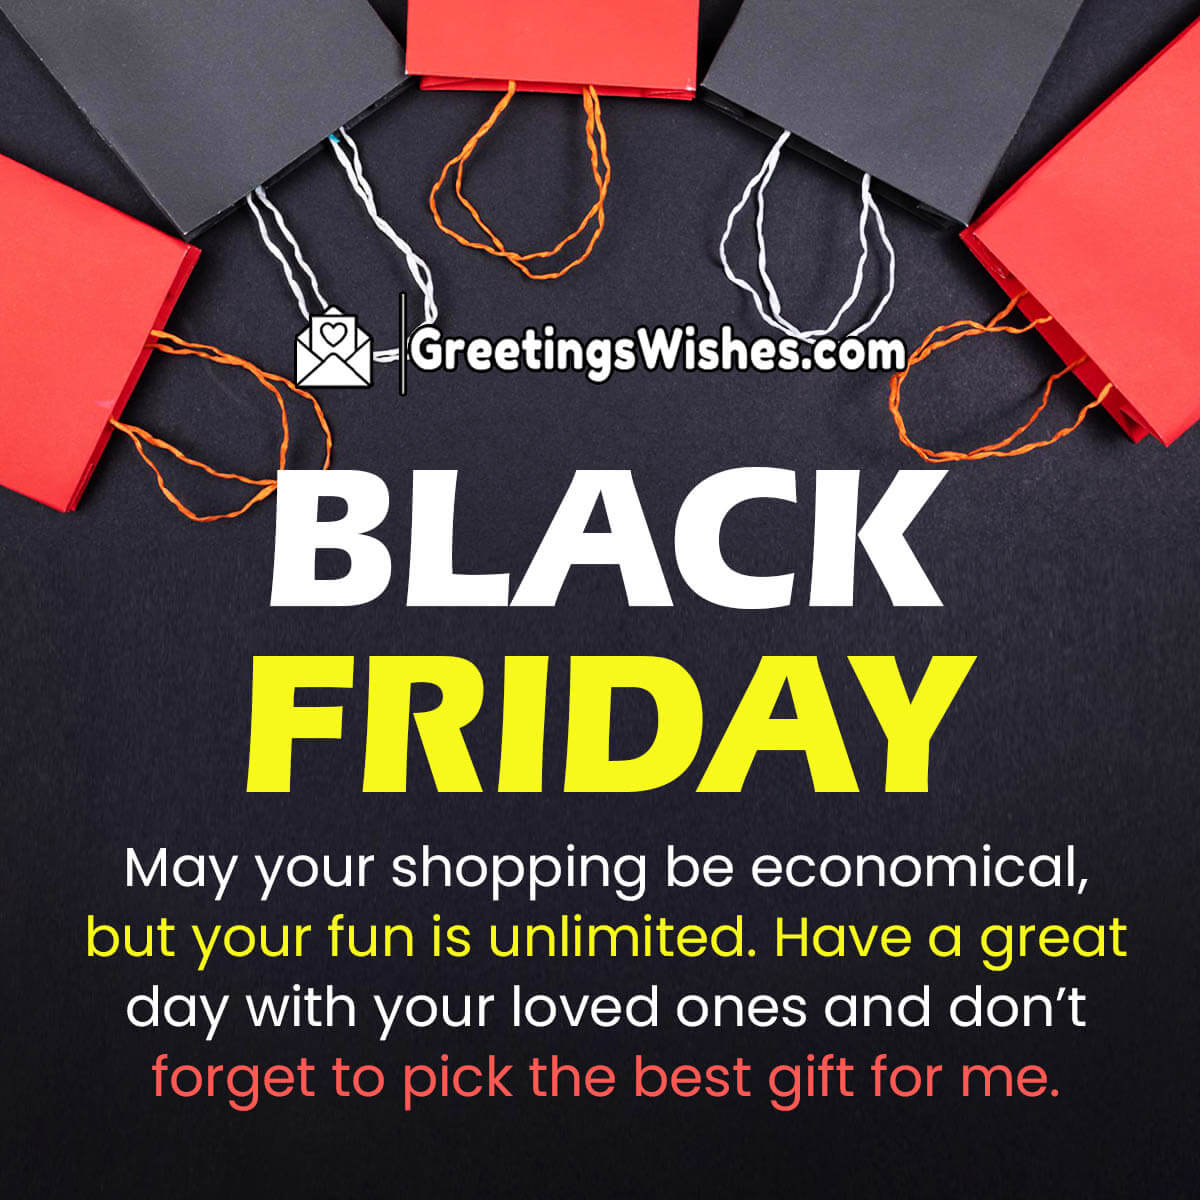 Black Friday Shopping Wish